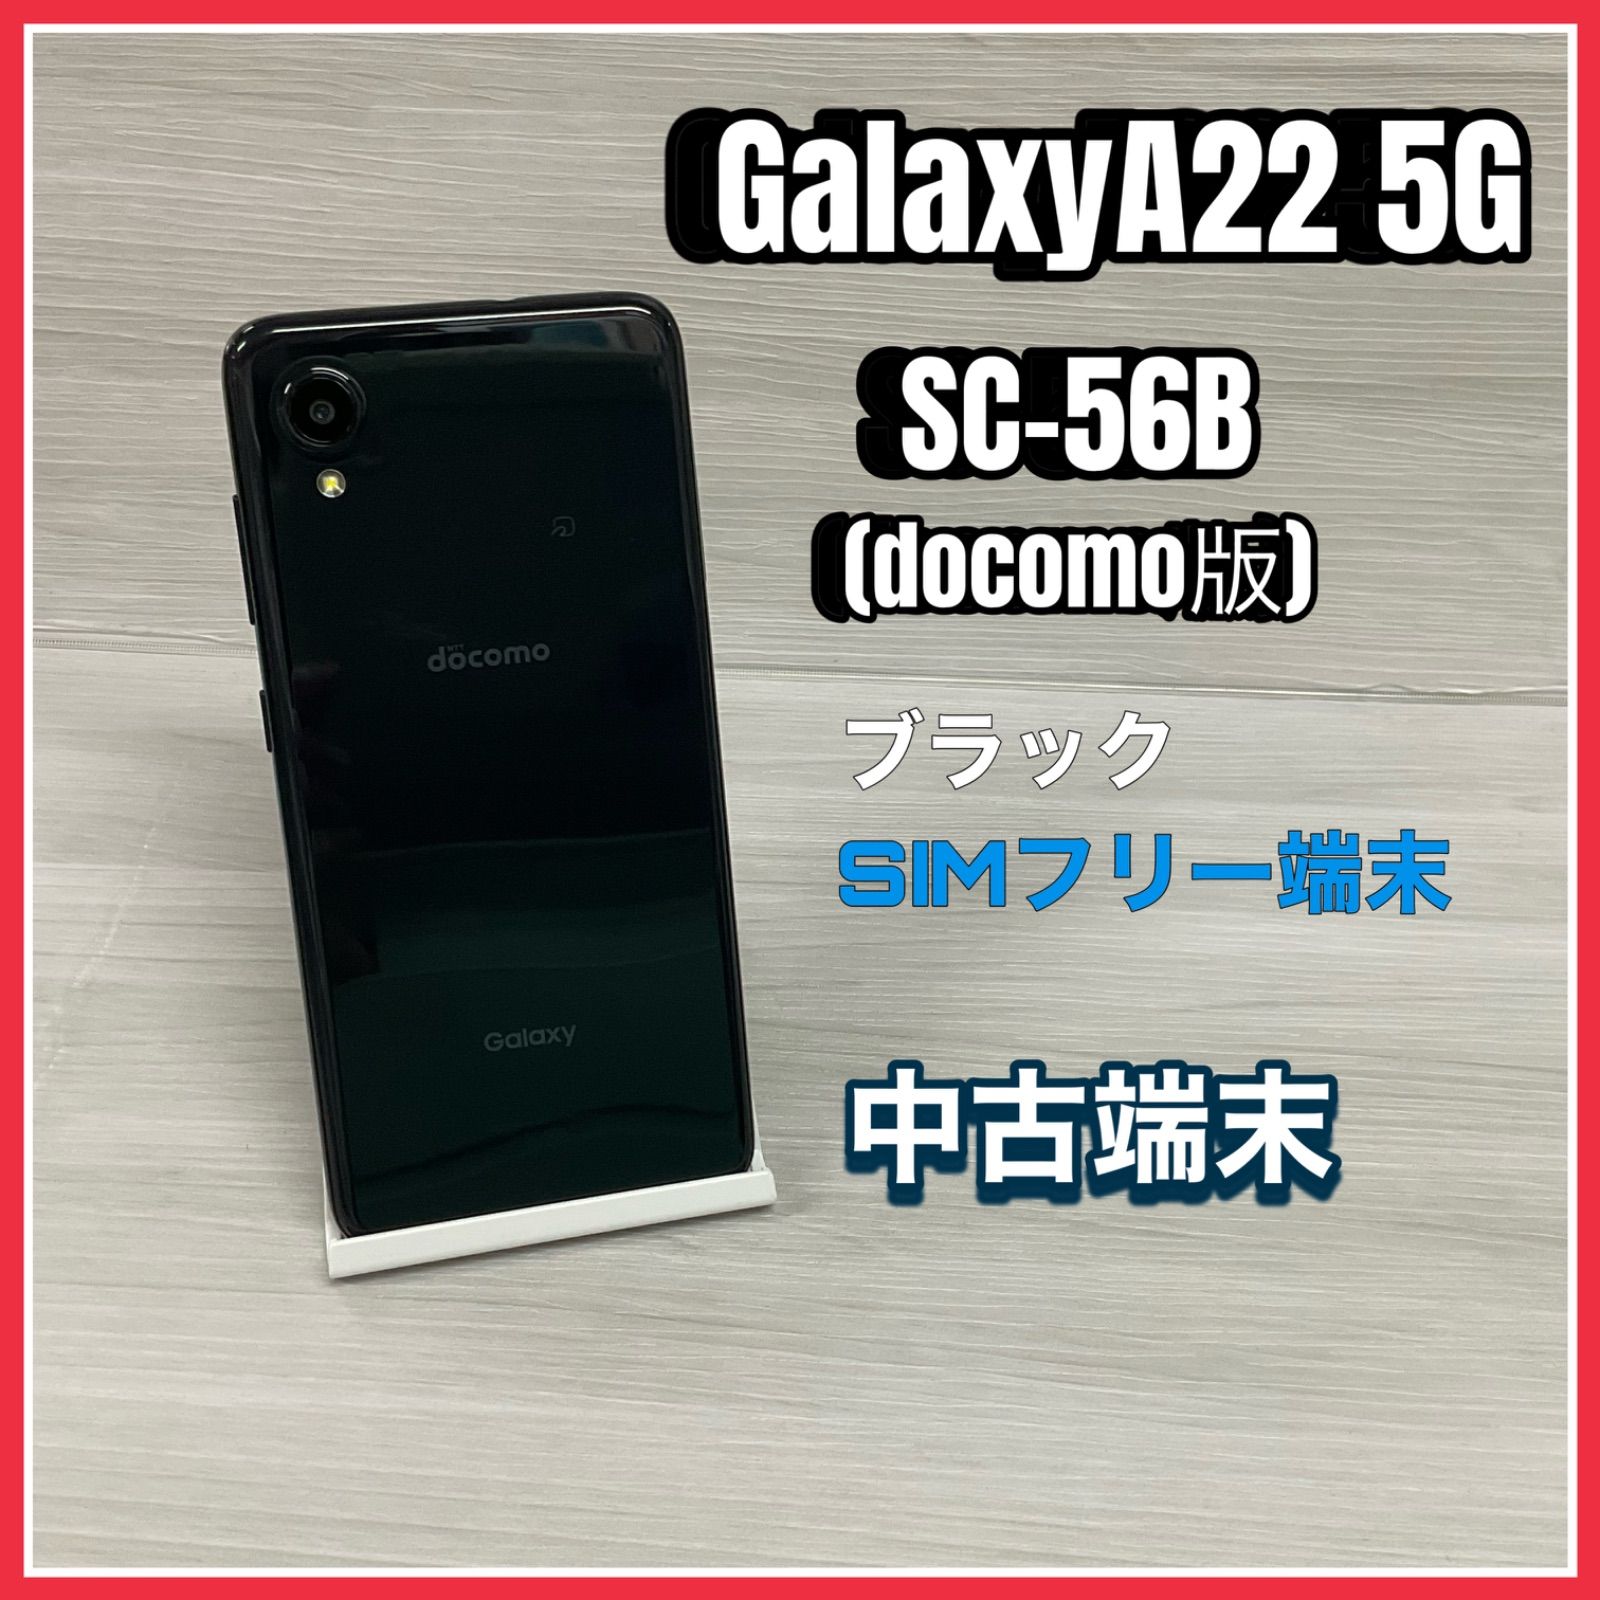 Galaxy A22 5G SC-56B 【中古】- SIMロック解除済 -docomo版